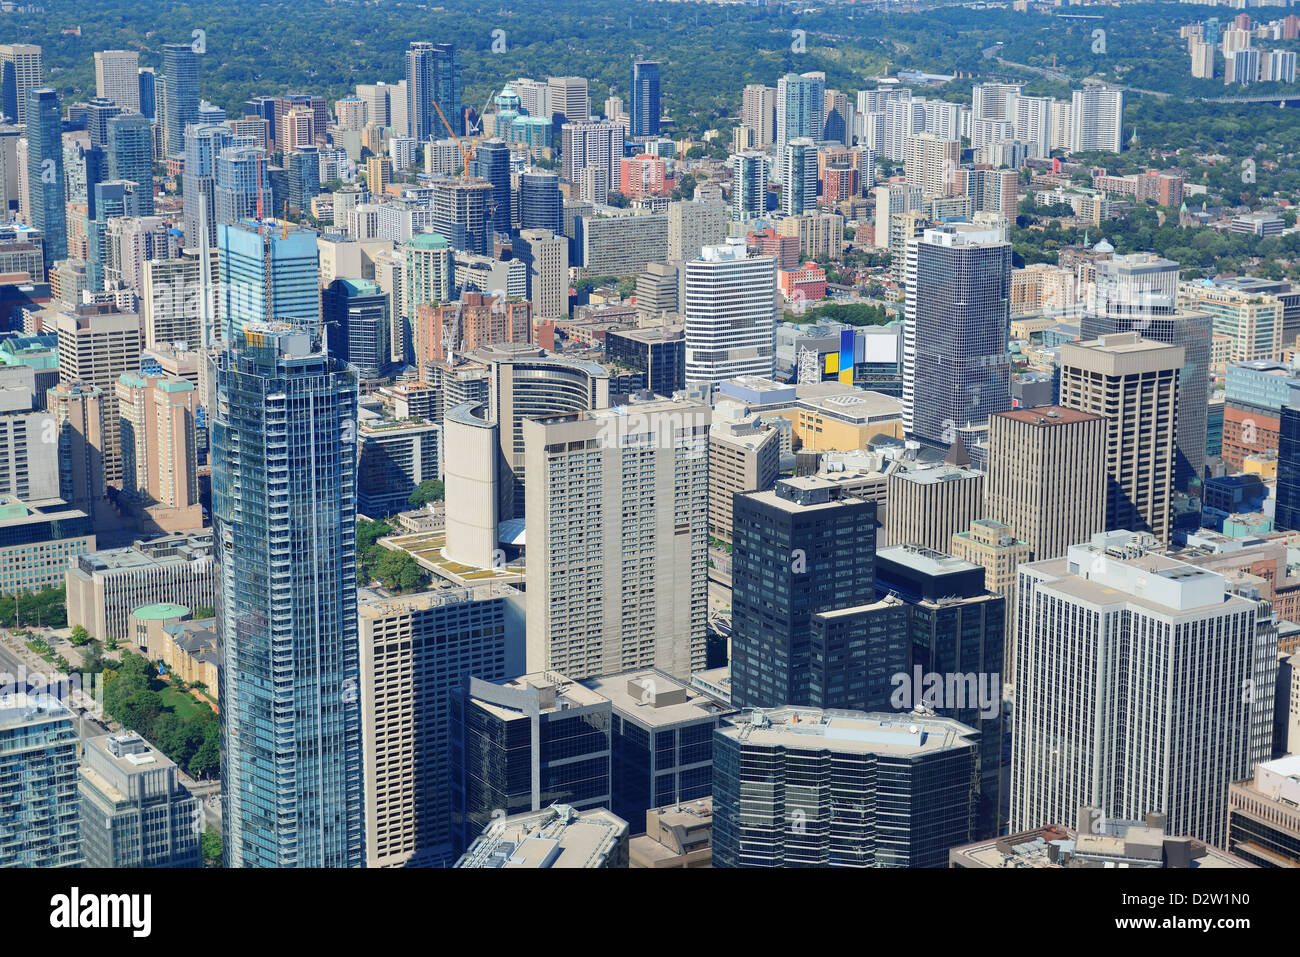 Toronto urban architecture aerial view. Stock Photo